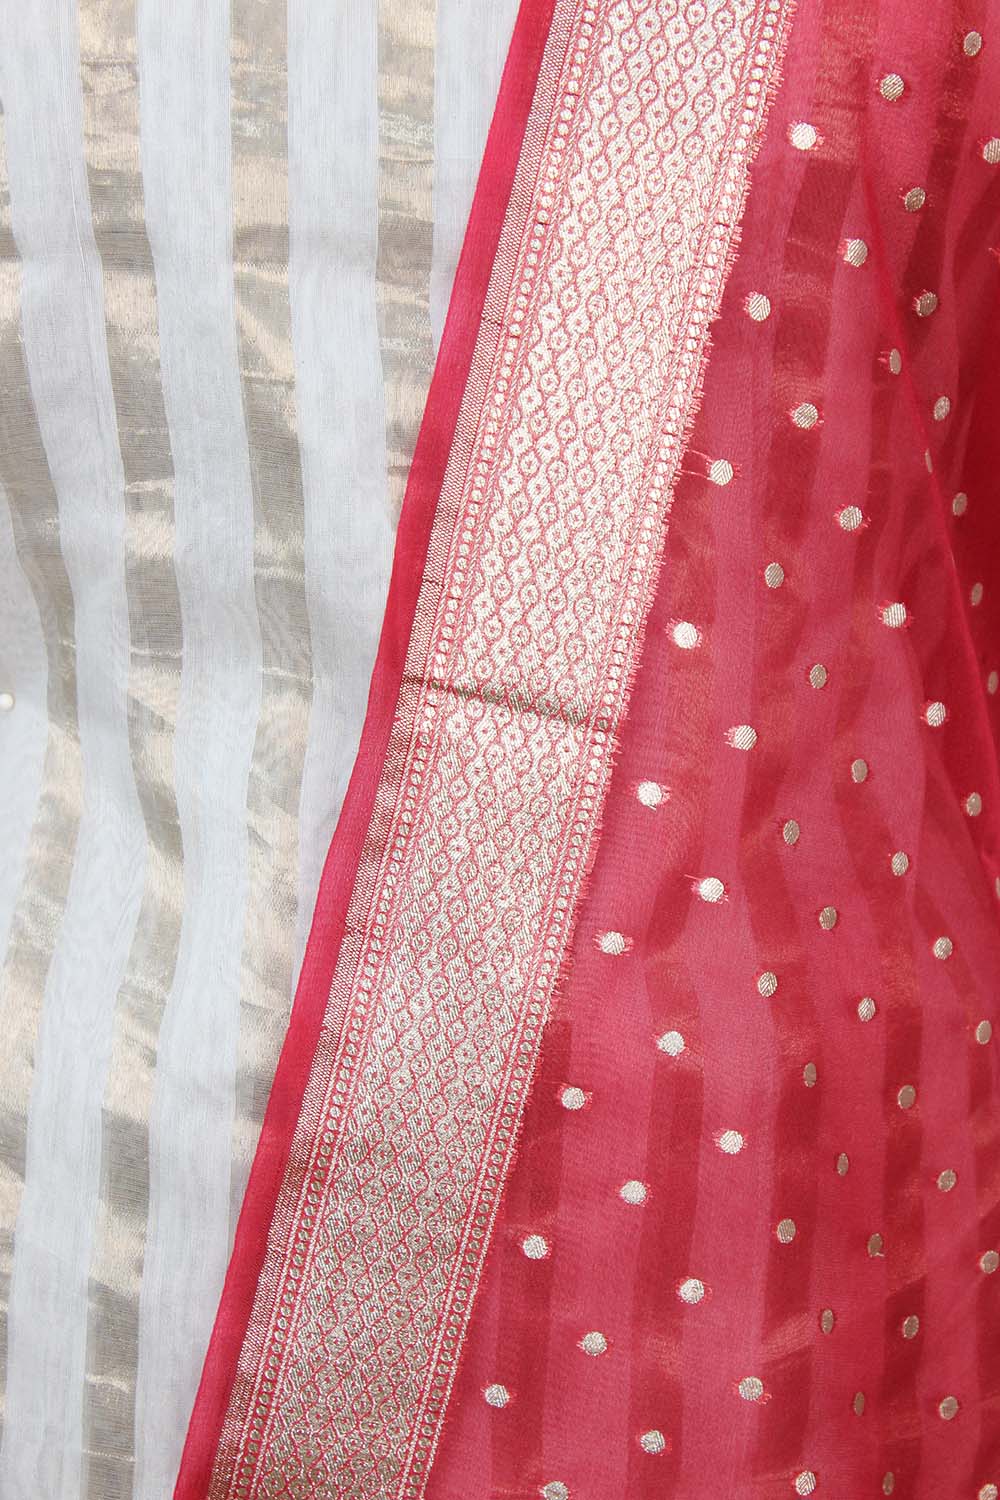 Off White Banarasi Chanderi Silk Suit With Red Banarasi Organza Dupatta